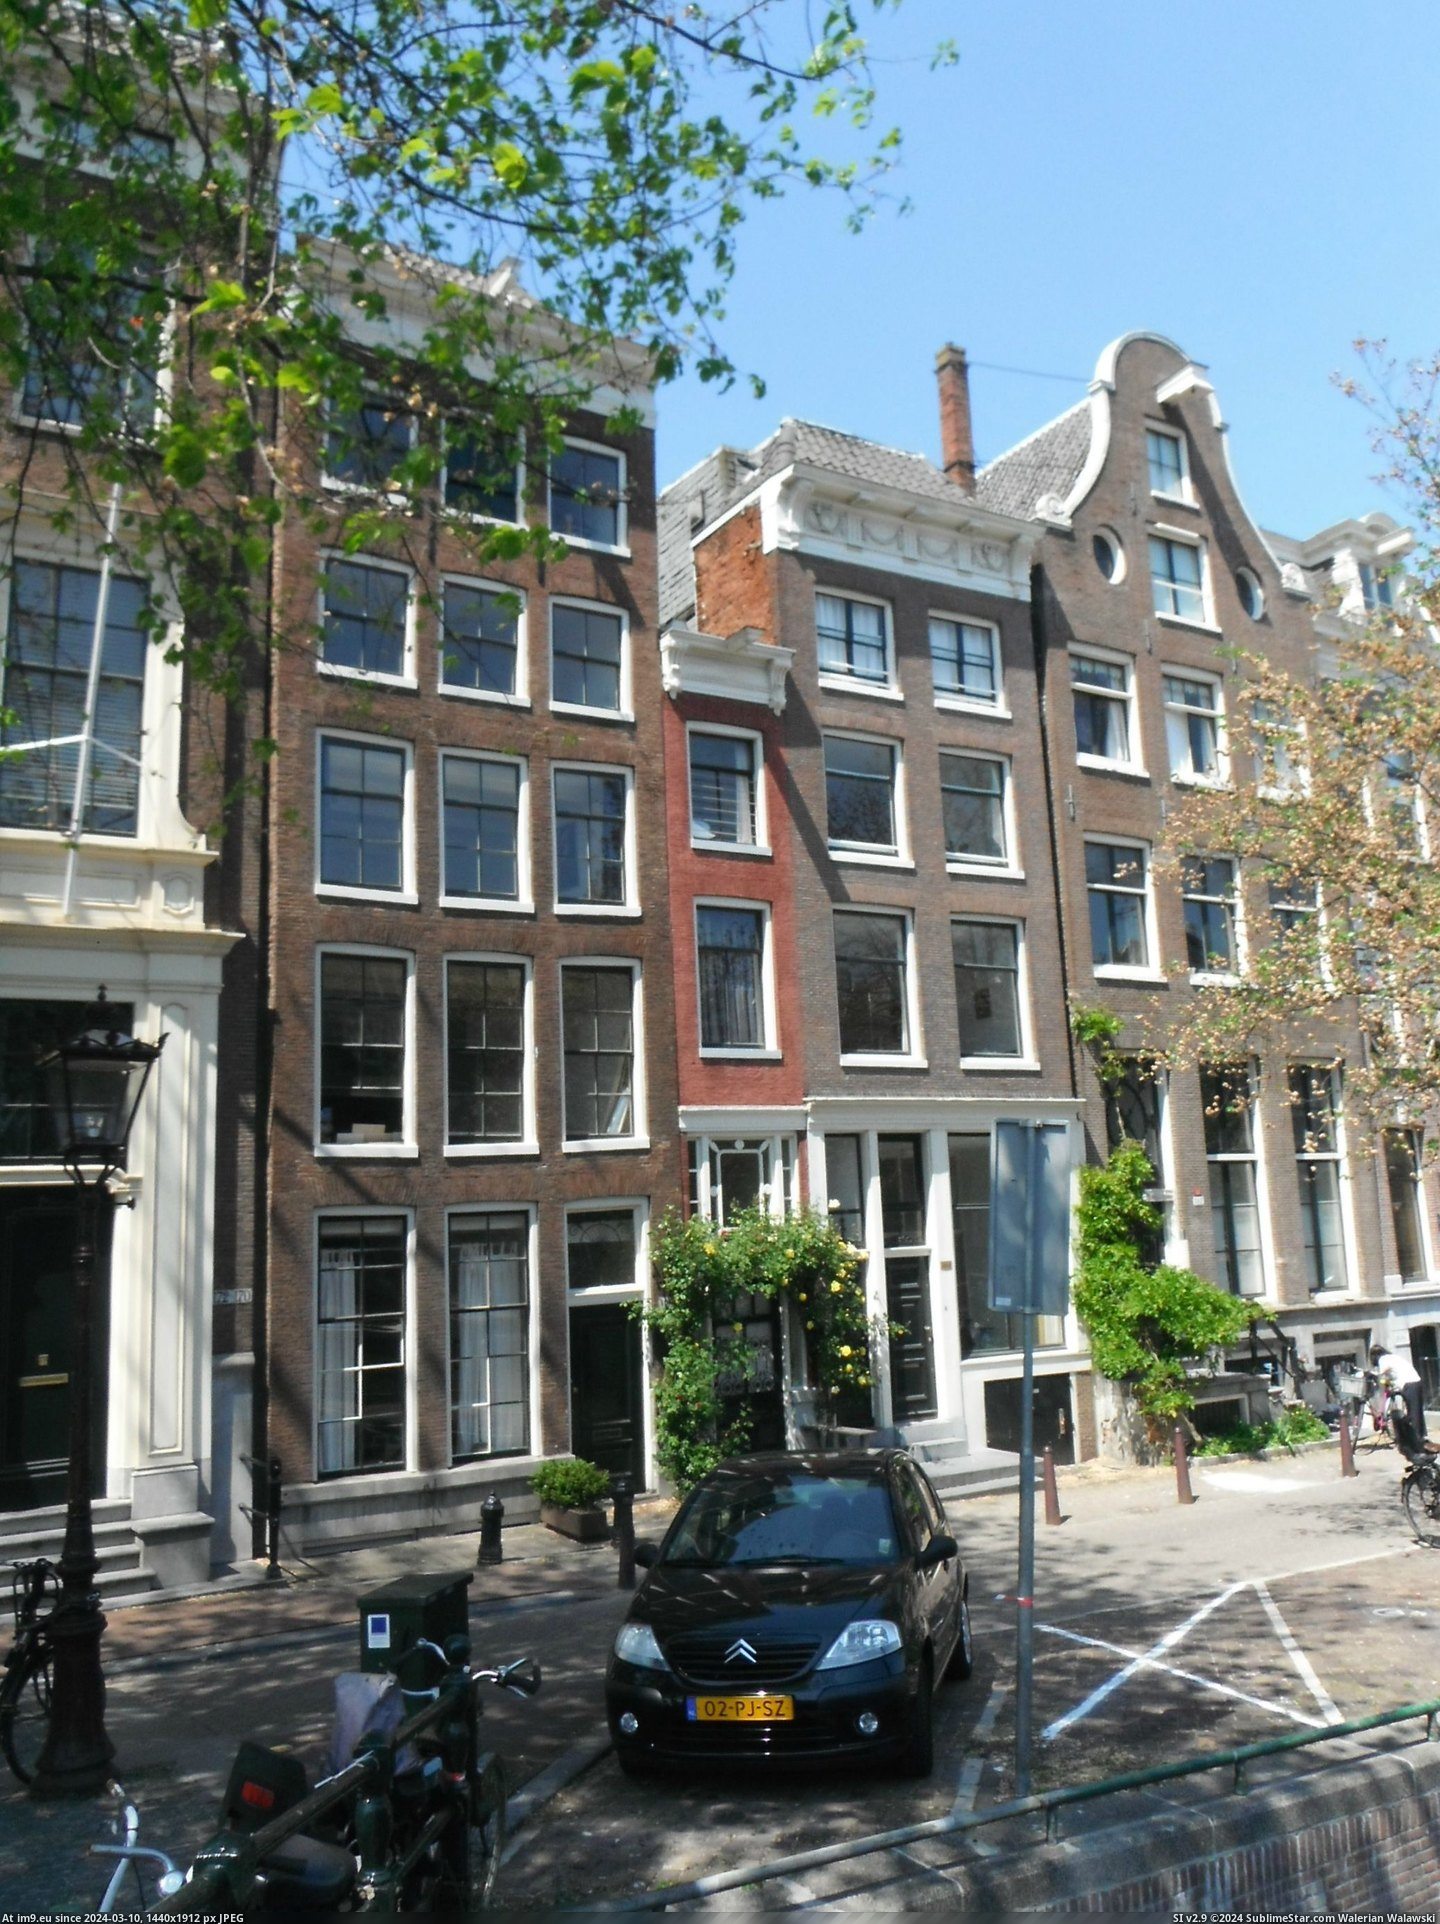 #House #Narrowest #Amsterdam [Mildlyinteresting] The narrowest house in Amsterdam Pic. (Obraz z album My r/MILDLYINTERESTING favs))